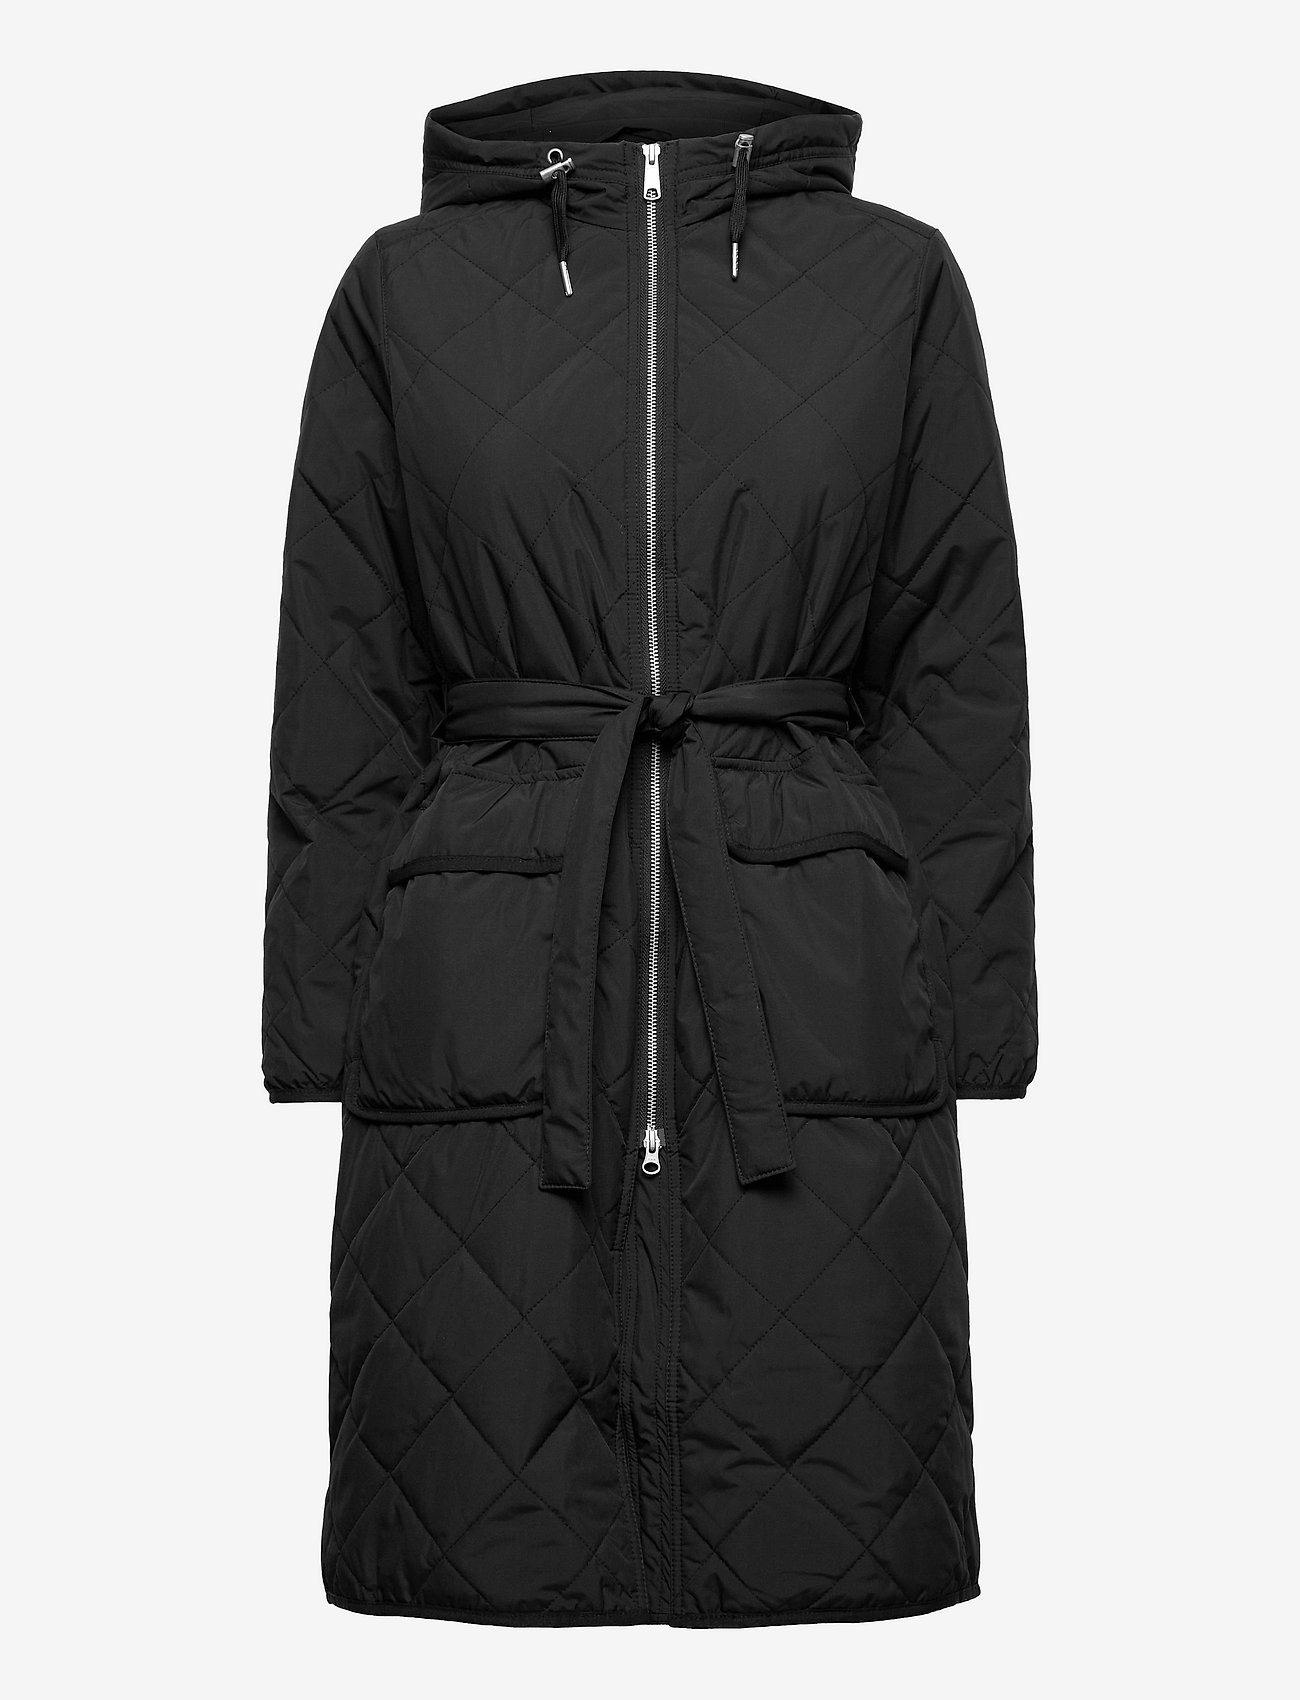 Makia - Aura Coat - winter jackets - black - 0